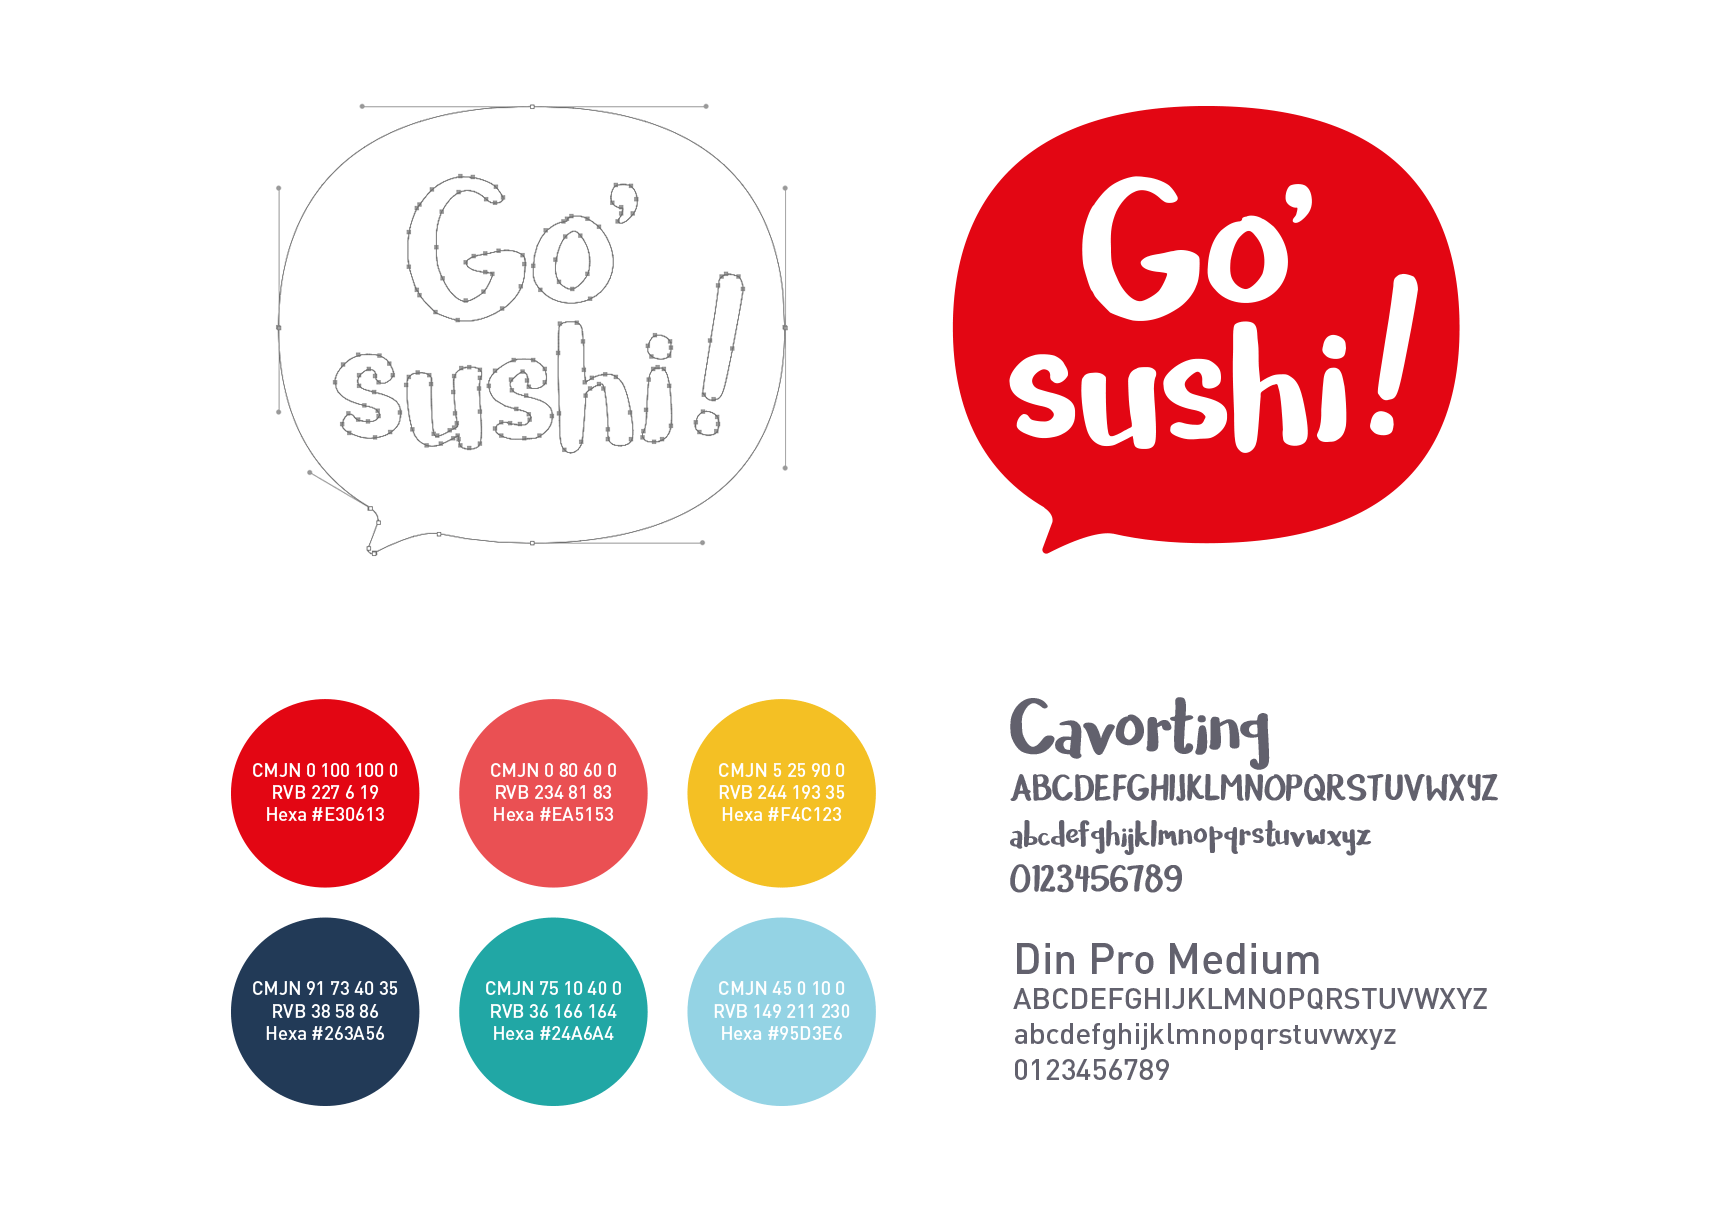 Go sushi!